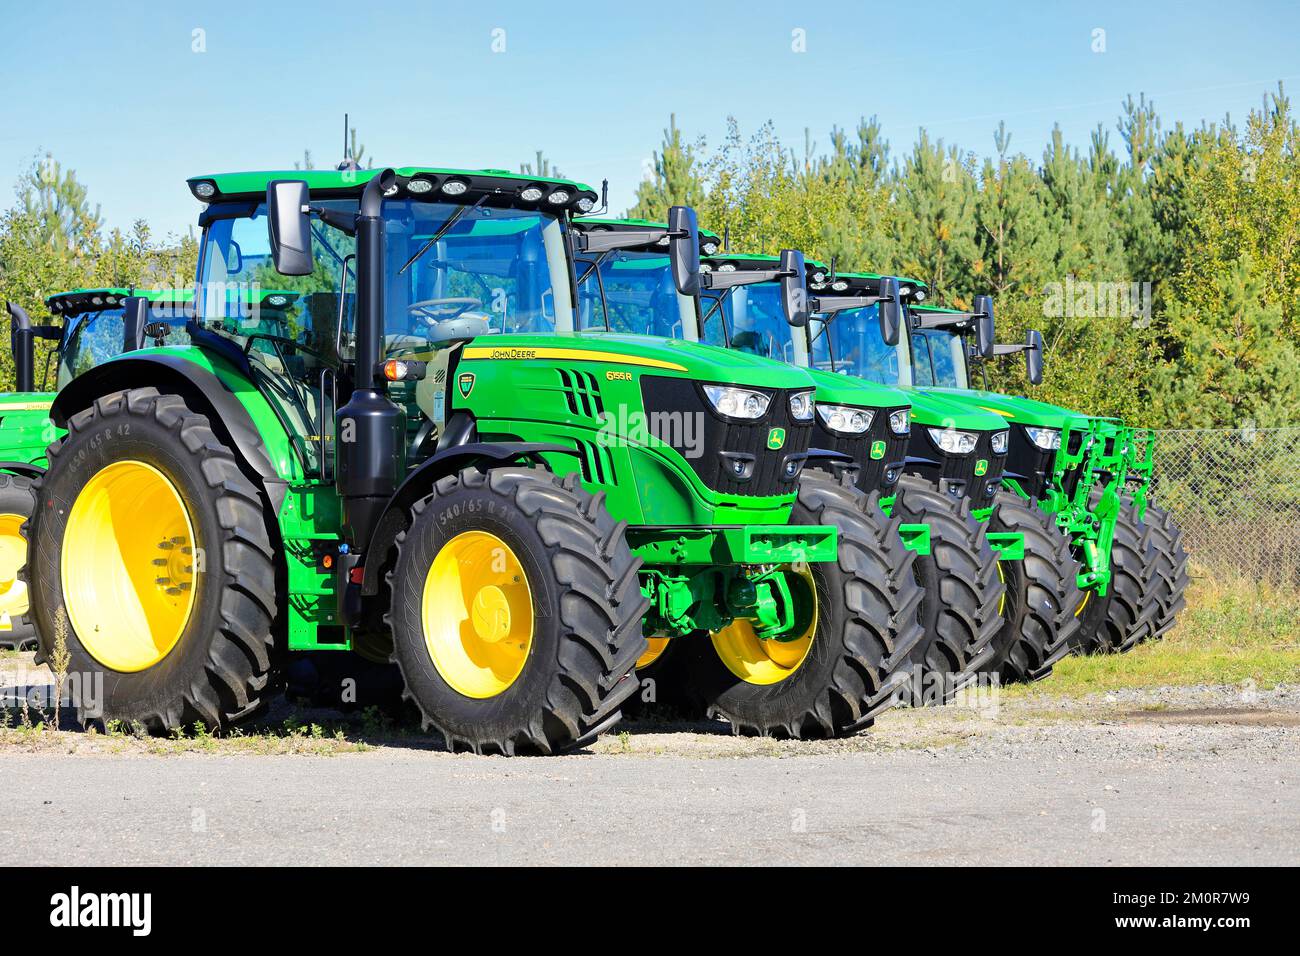 Die neuen John Deere 6155R-Traktoren stehen an einem sonnigen Tag im Frühherbst auf einem Hof in Folge. Lieto, Finnland. 22. September 2022. Stockfoto